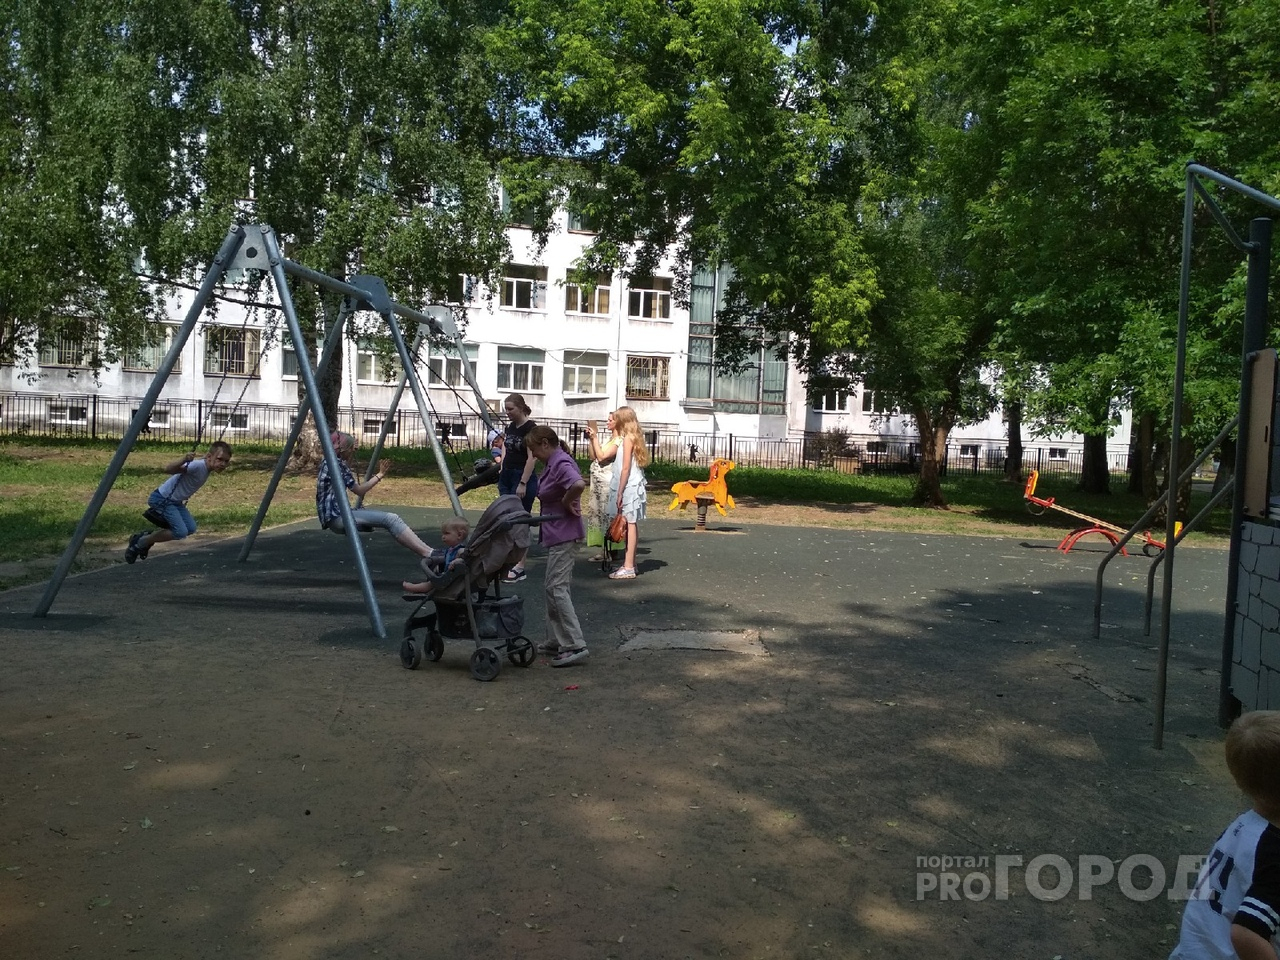 Половина "за чертой": Голикова о жизни многодетных семей в России